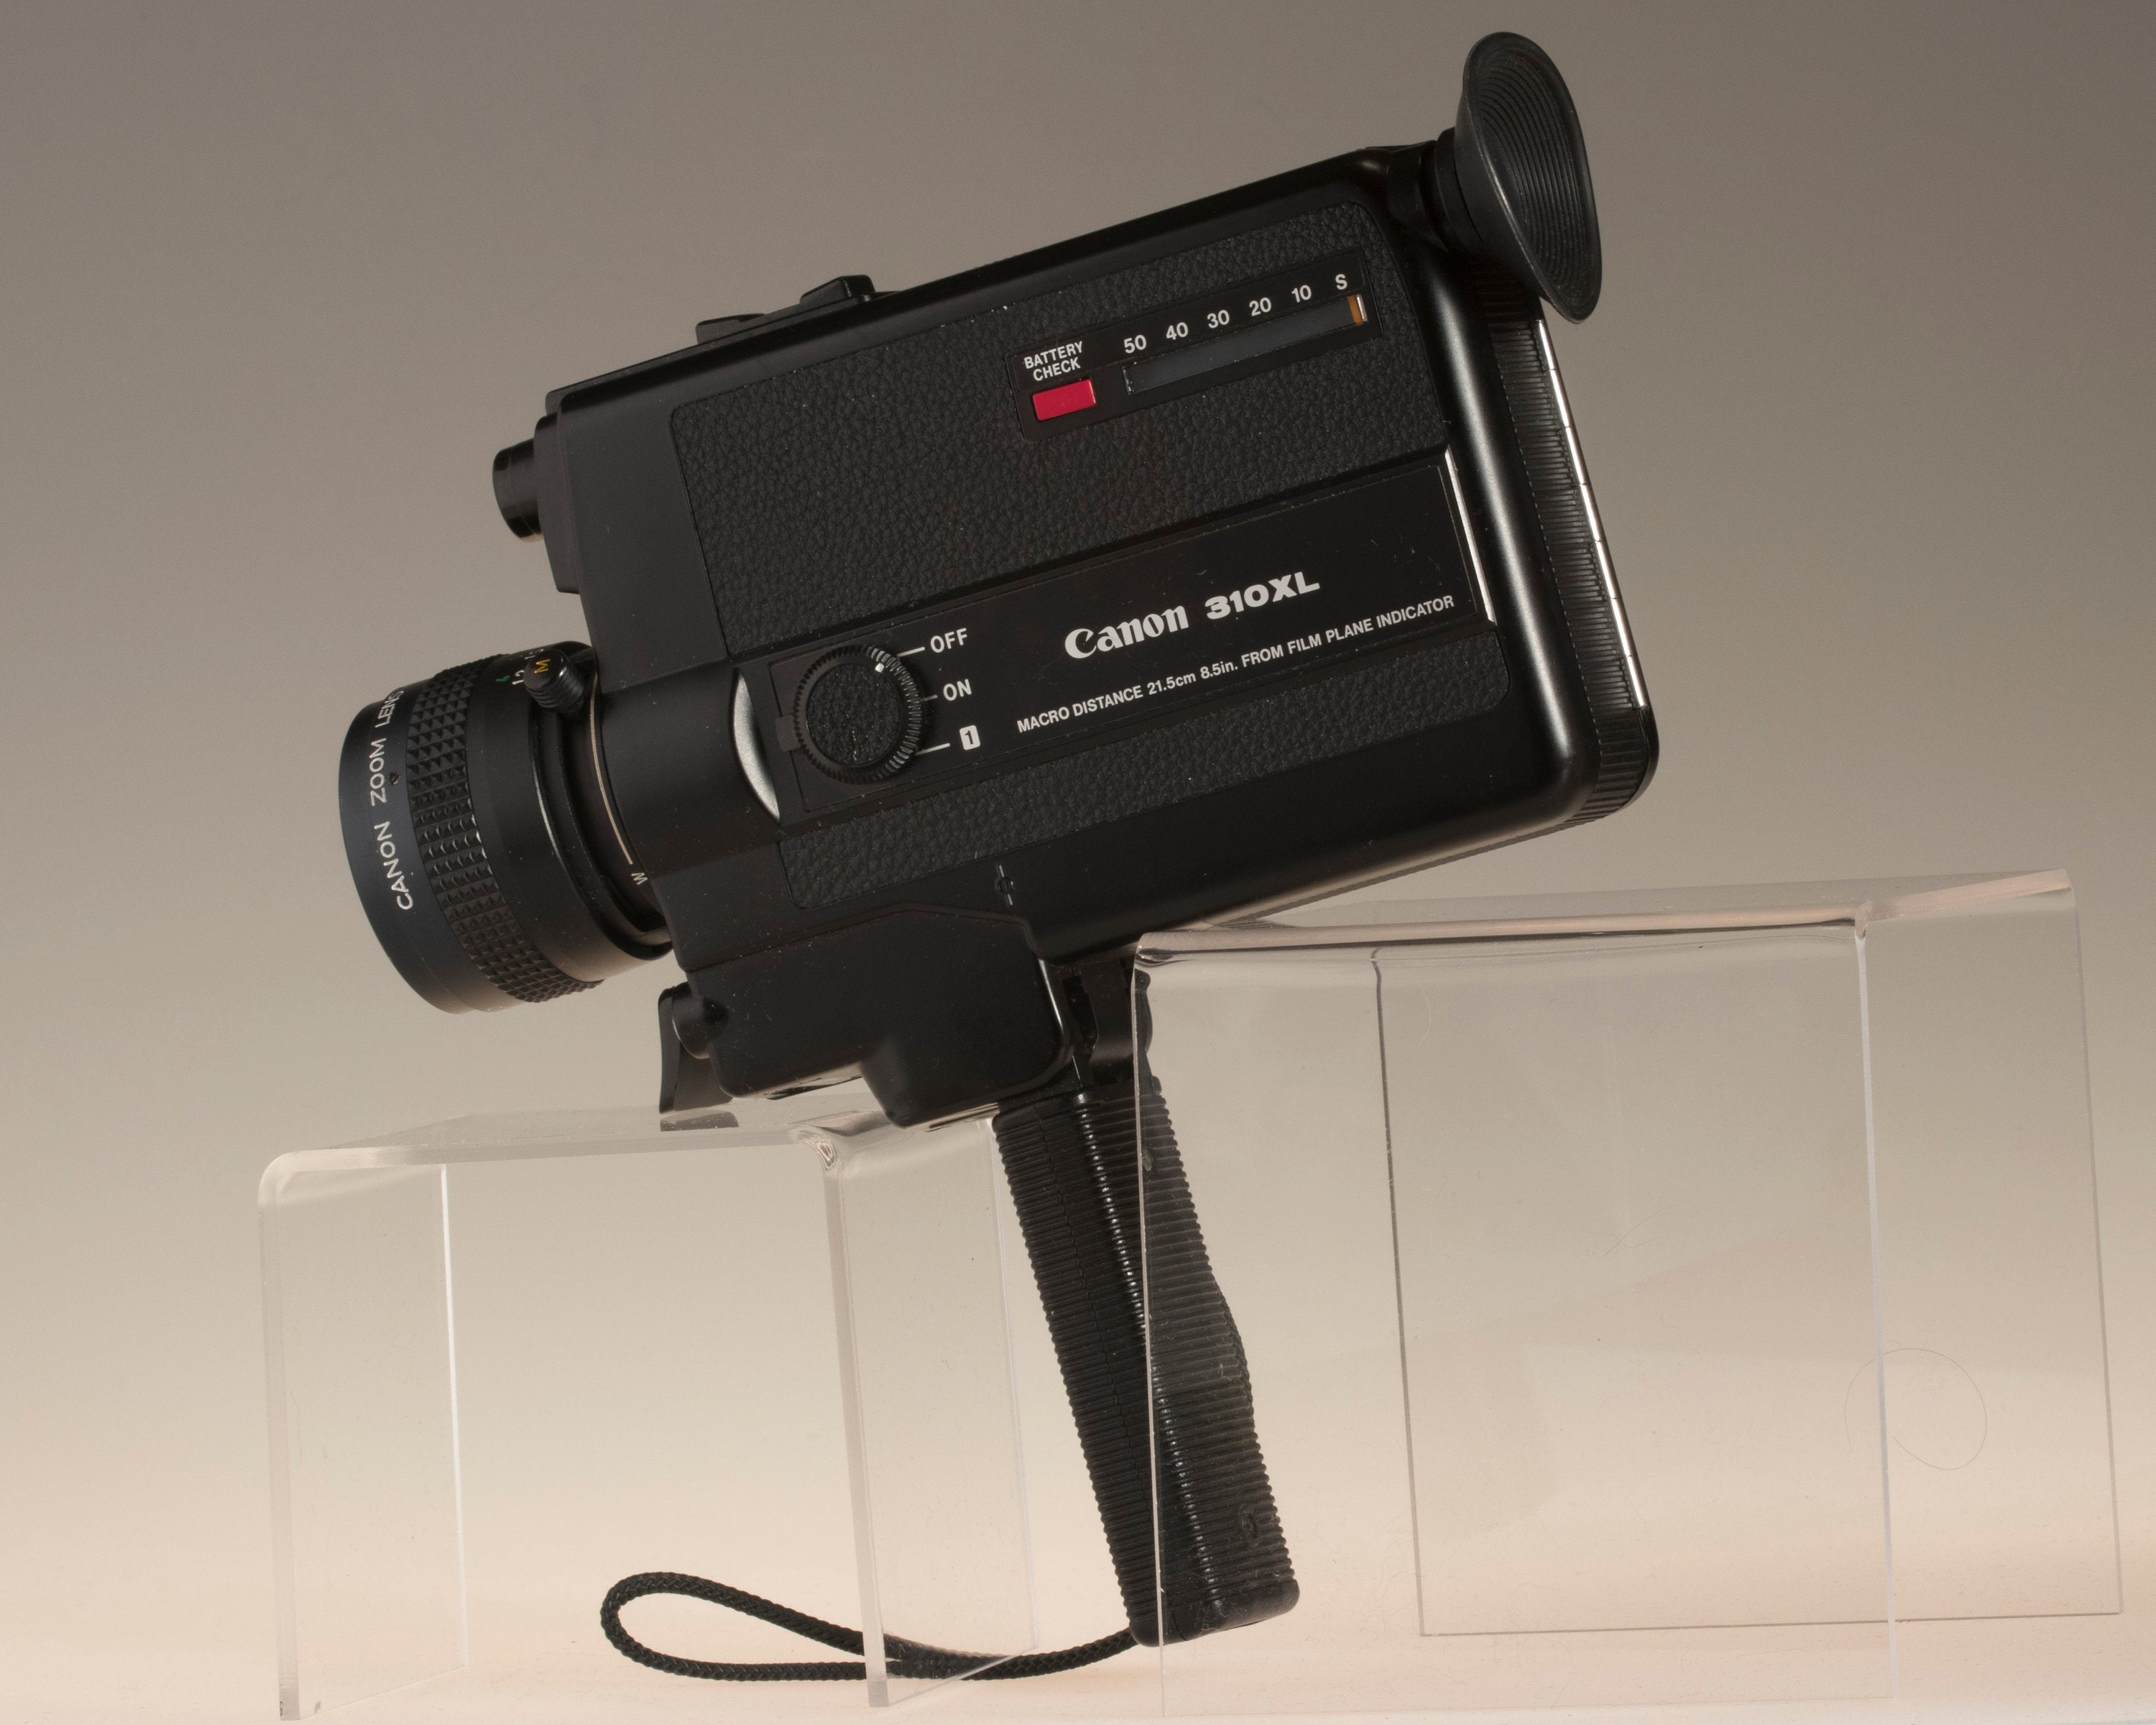 Canon 310XL Super 8 movie camera – New Wave Pool